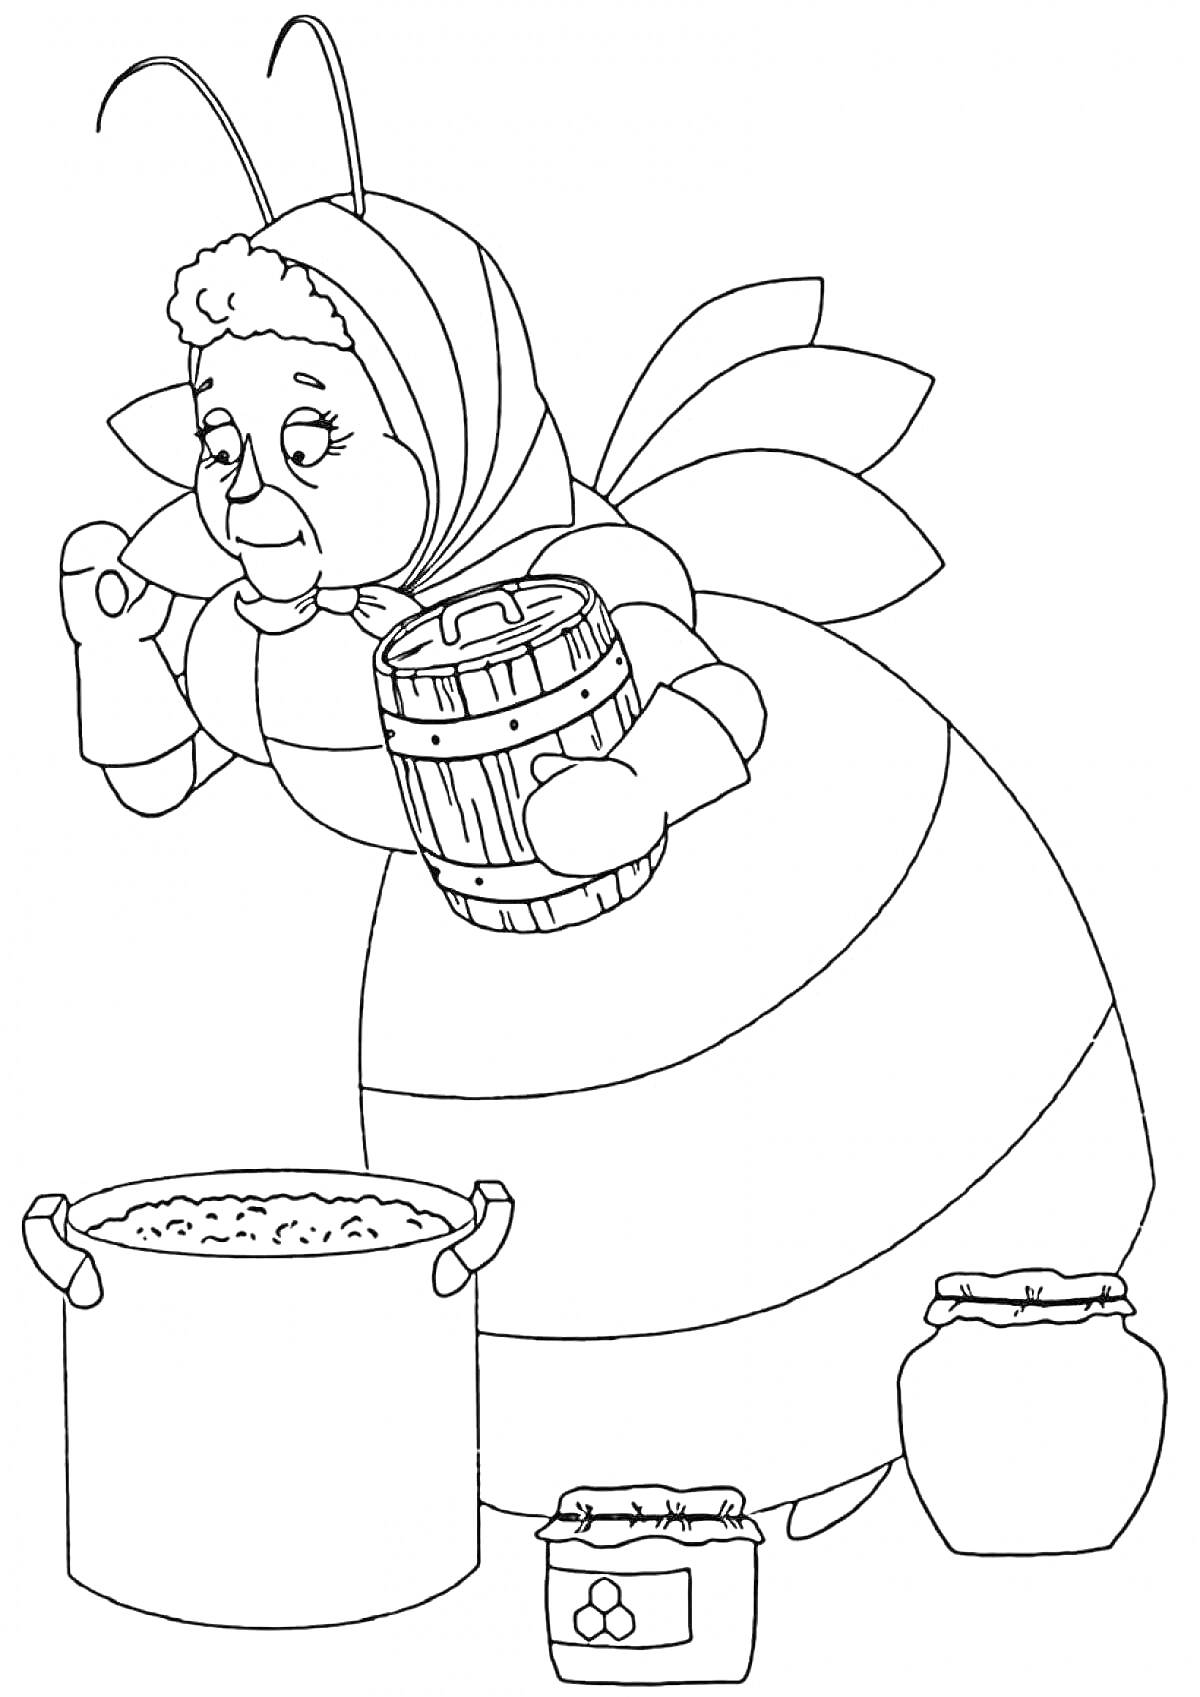 Раскраска Баба Капа держит бочонок и помешивает еду в кастрюле, рядом стоят два горшка с едой